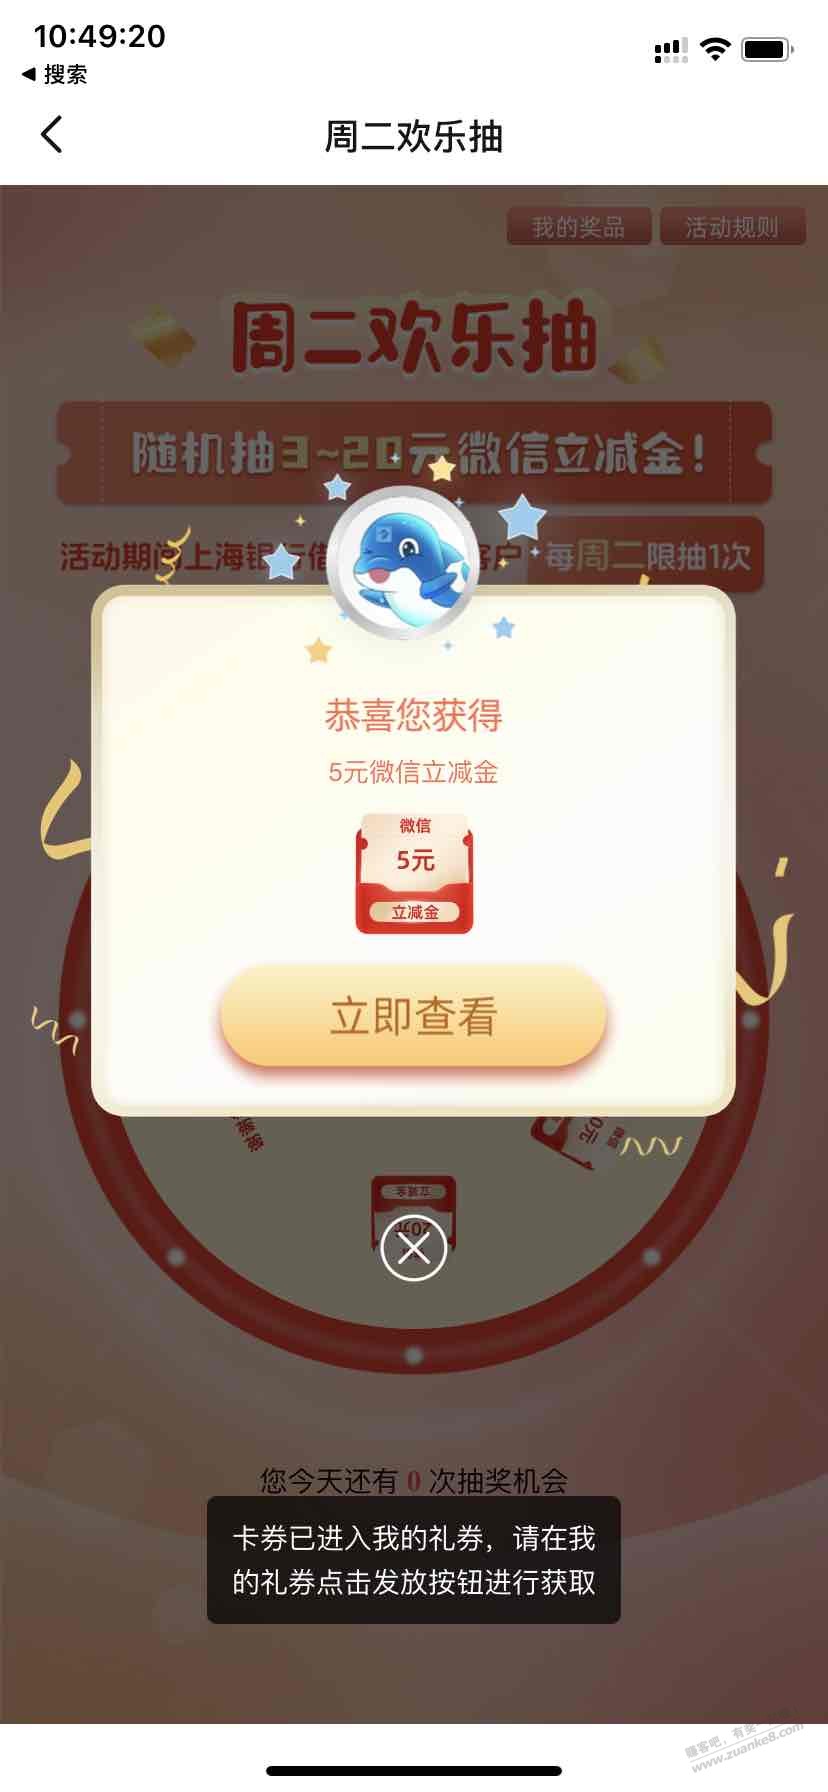 5元毛-上海银行app首页-惠小助(52huixz.com)